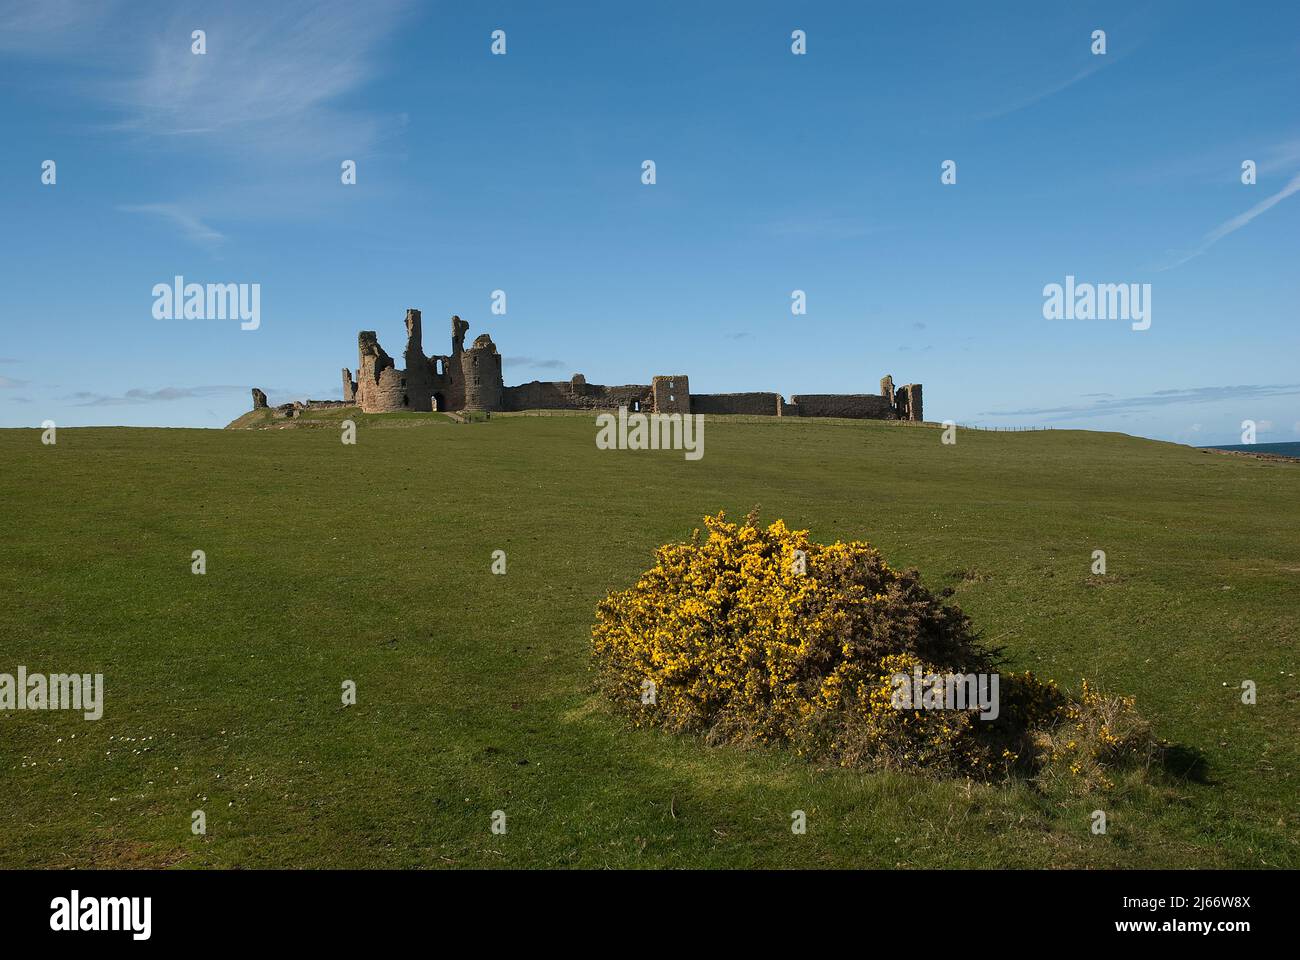 Imagen del paisaje que muestra cerca del lejano Castillo de Dunstanburgh con cielo azul y arbustos de gorges en flor en primer plano Foto de stock